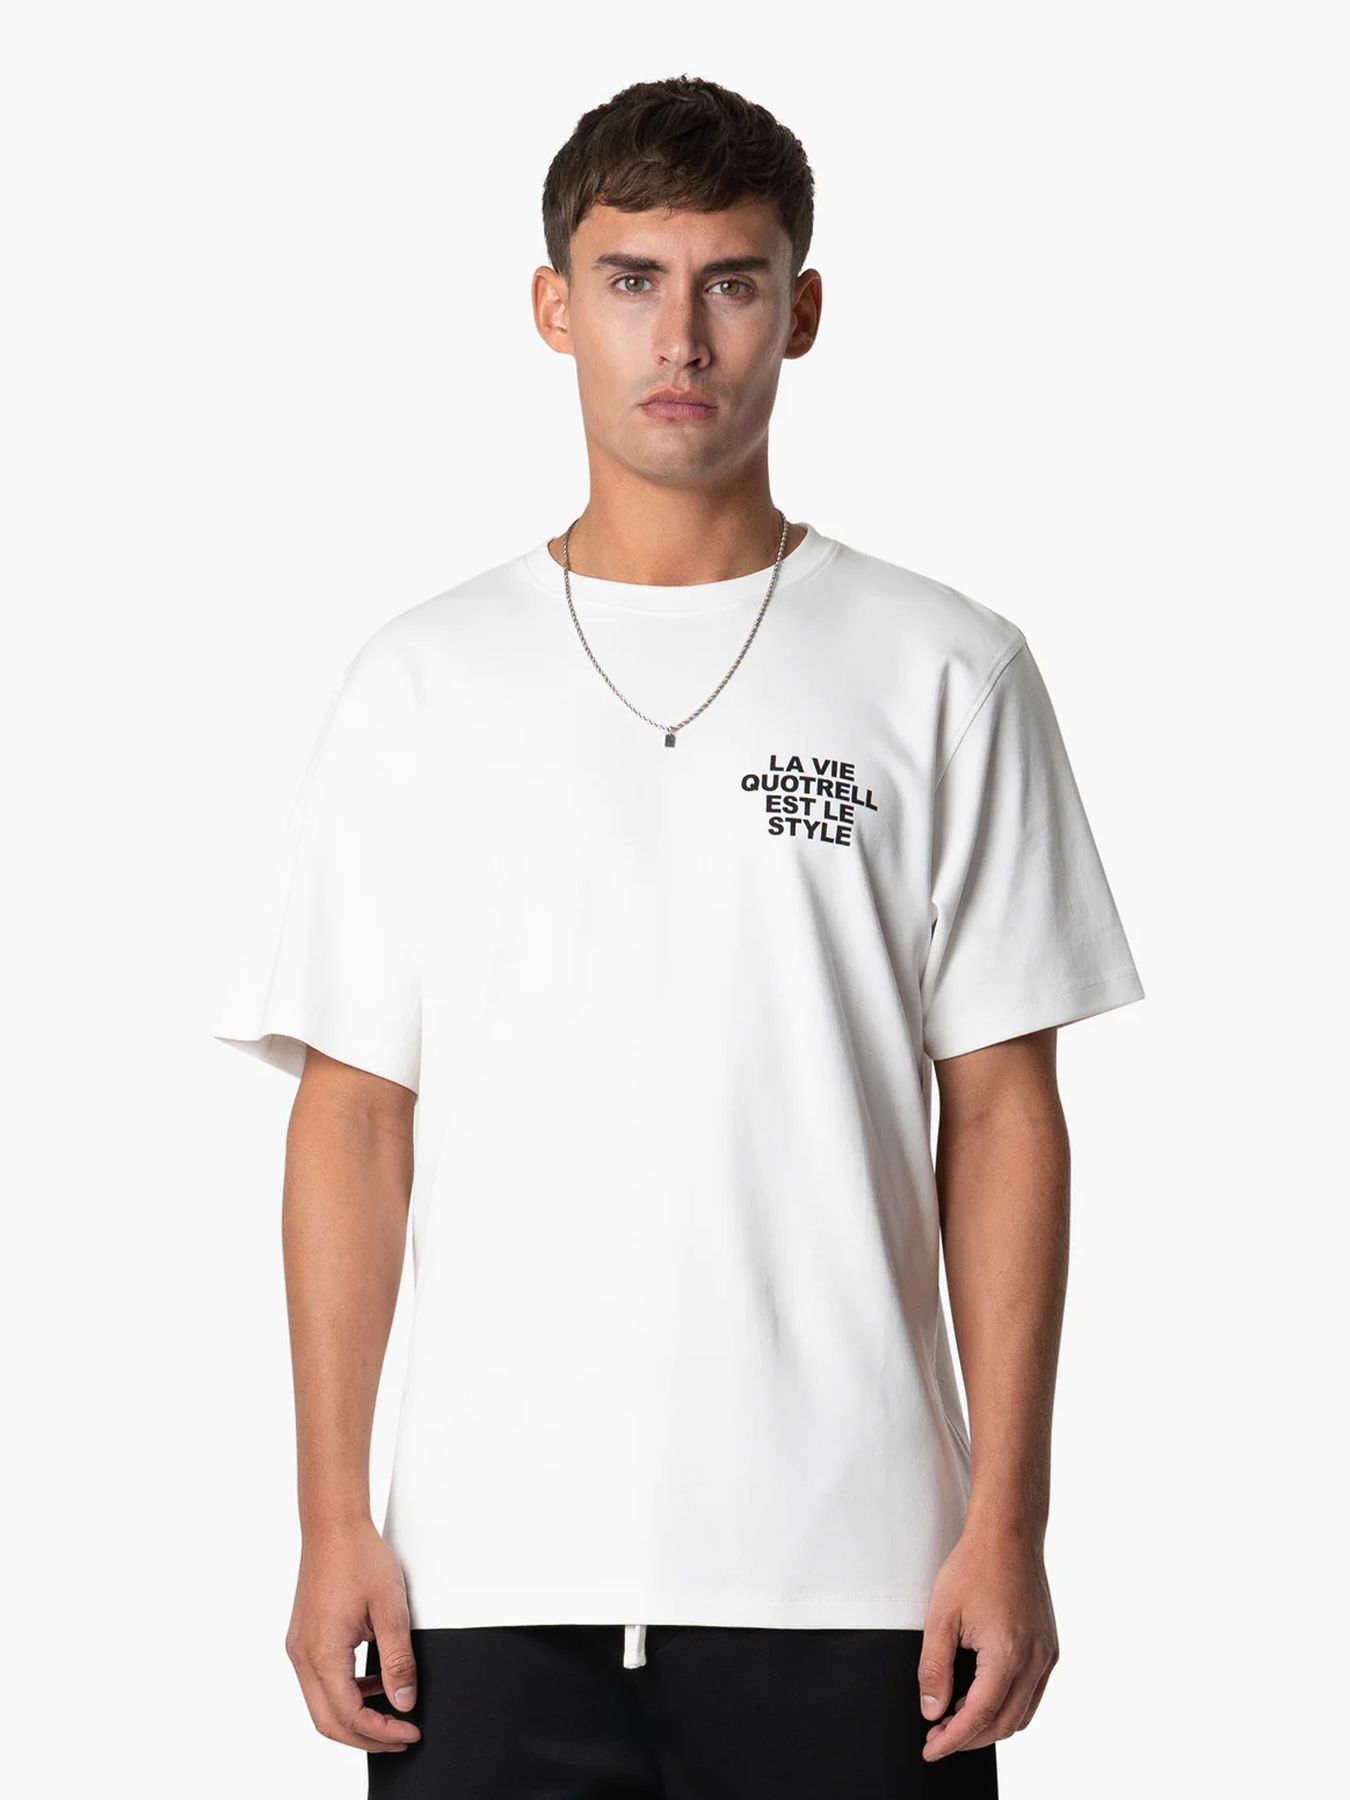 Quotrell La vie t-shirt White/black 00107928-102